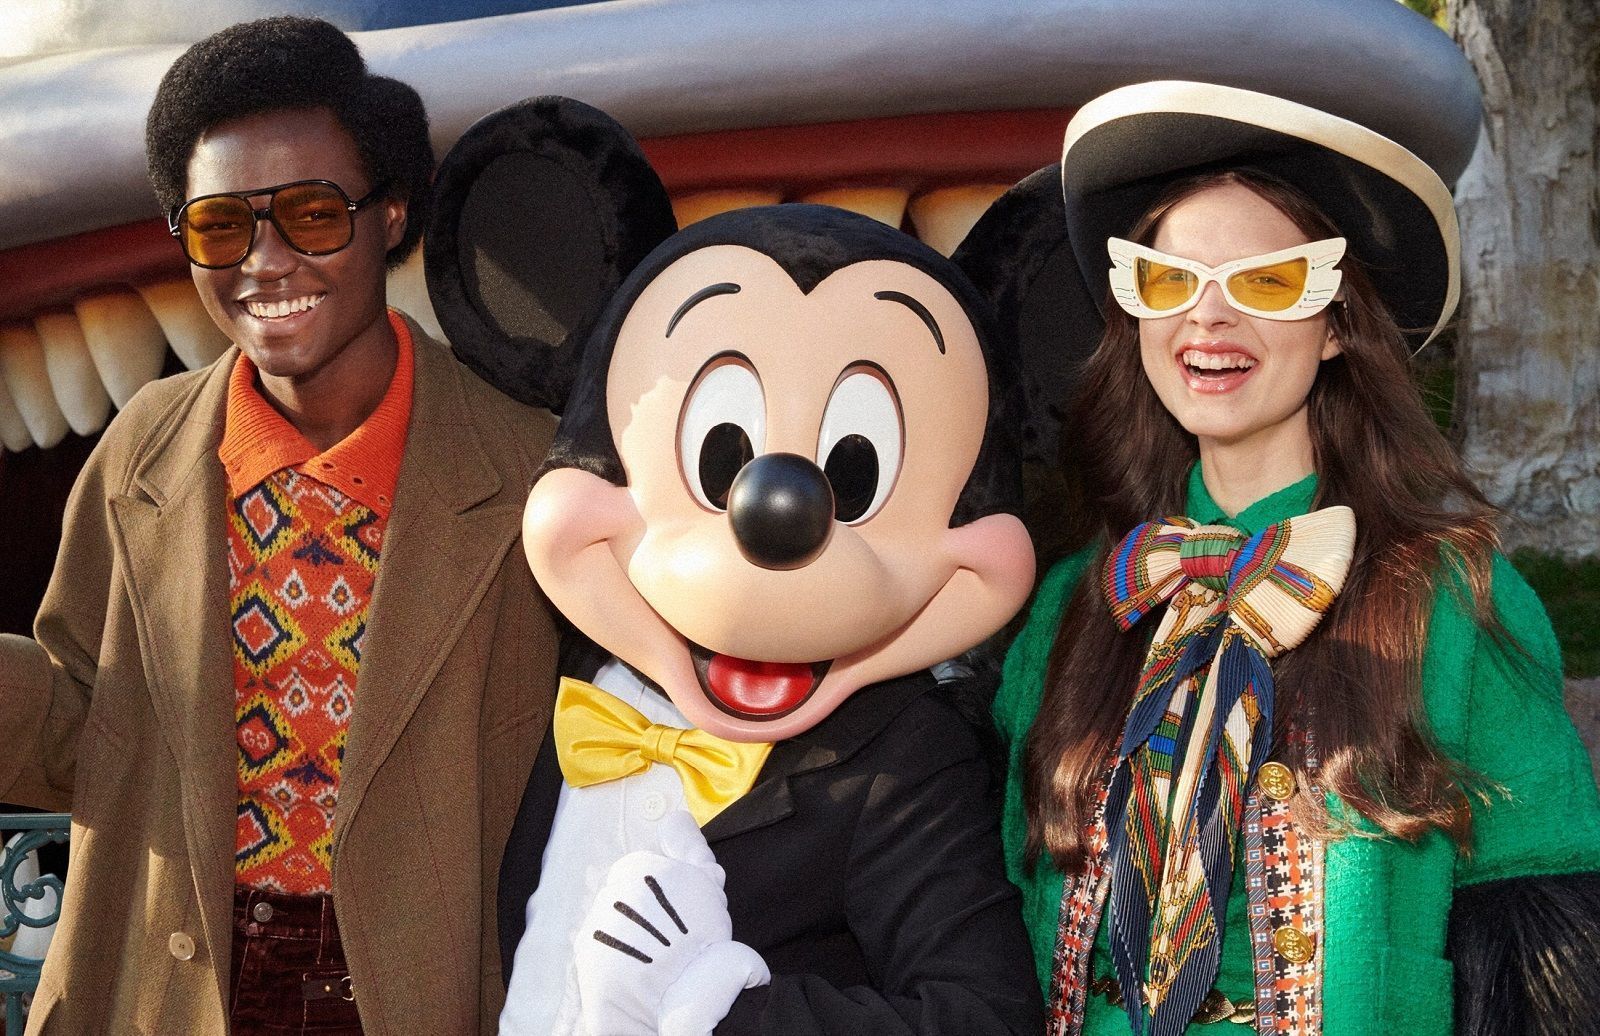 Gucci, Accessories, Gucci Mickey Mouse Disney Silk Scarf